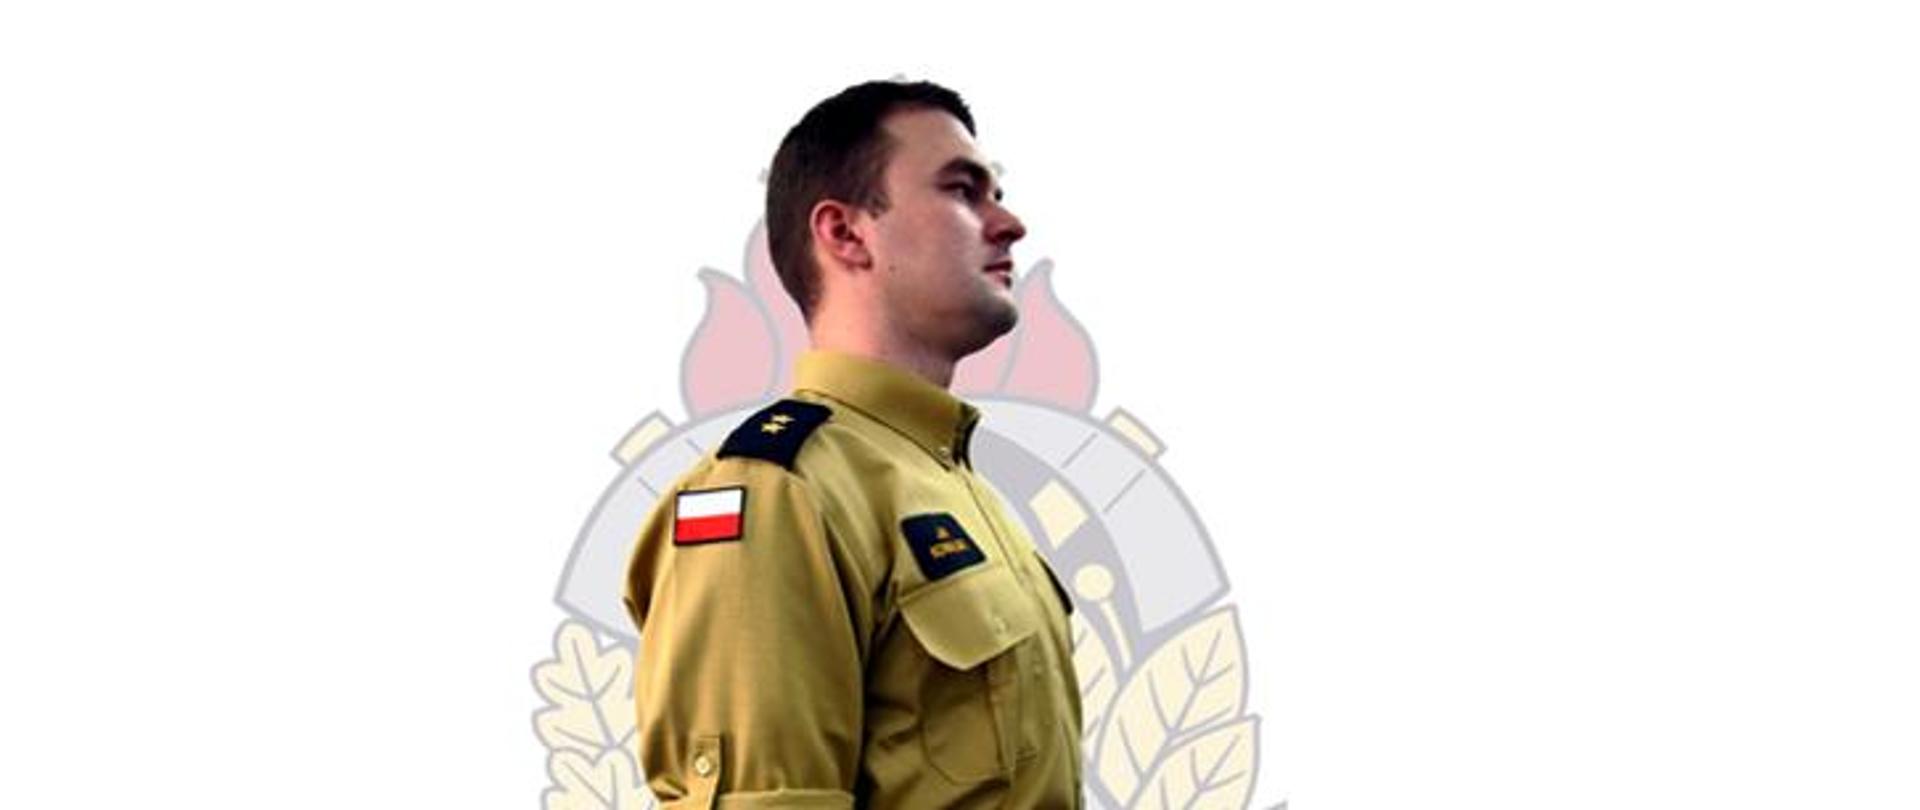 Funkcjonariusz w nowym wzorze munduru w kolorze piaskowym z pagonami na barkach i flagą Polski na ramieniu.